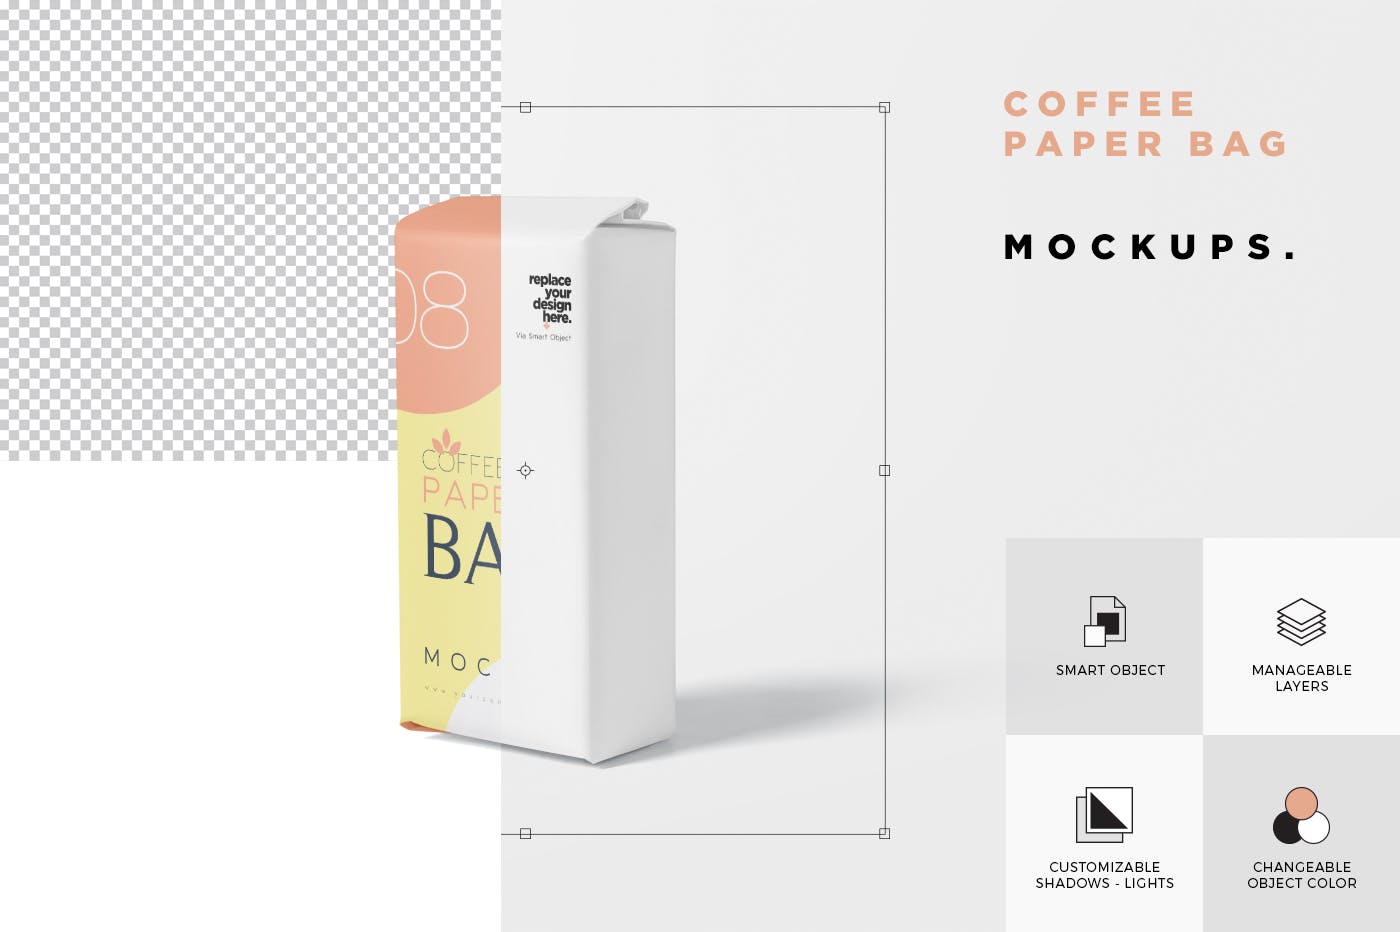 咖啡粉咖啡豆纸袋包装样机模板 Coffee Paper Ba